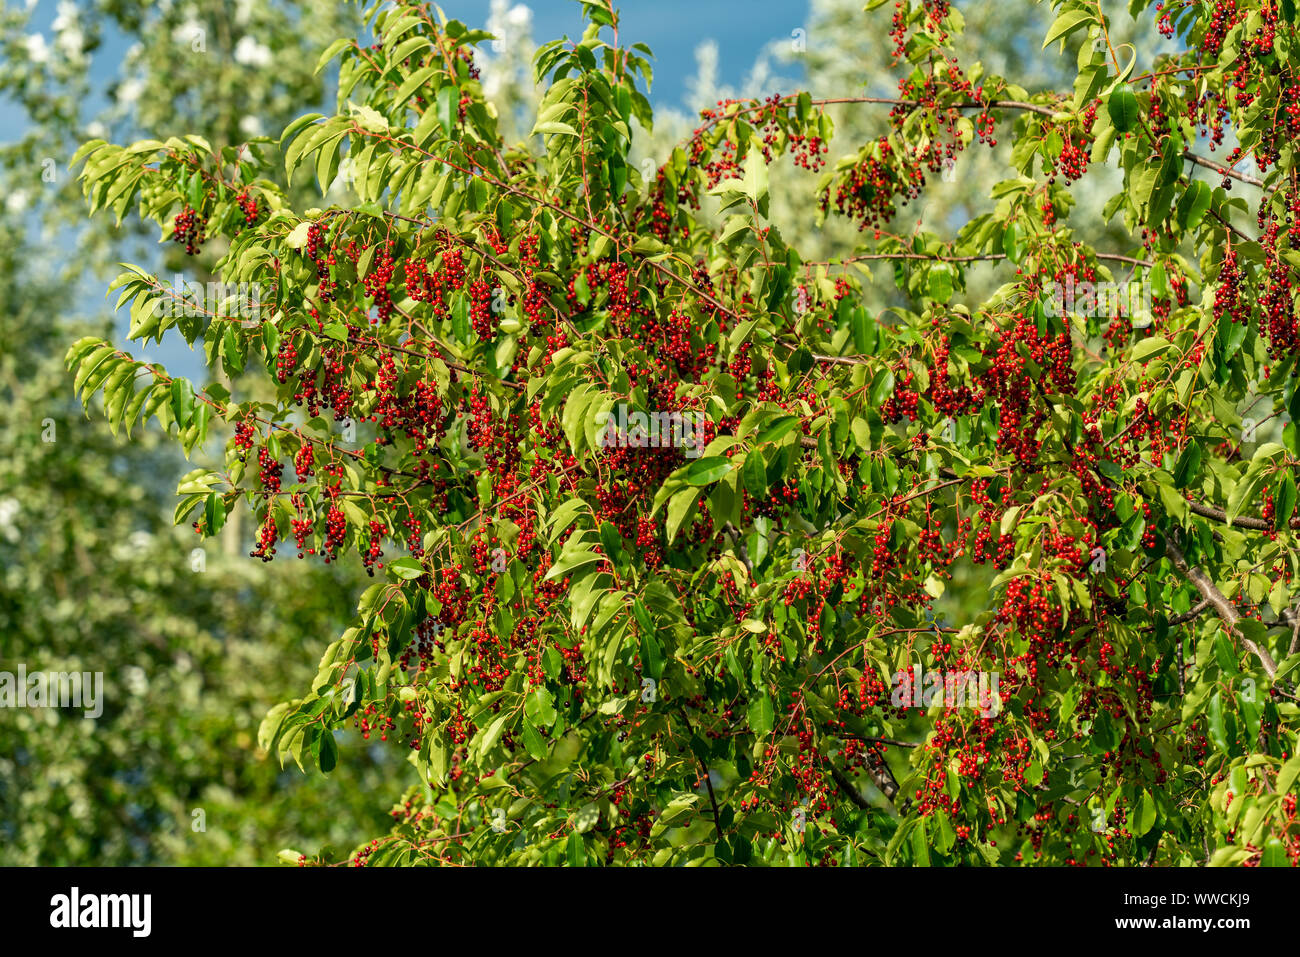 A black cherry tree (prunus serotina) full of unripe red berries in late summer sunshine Stock Photo